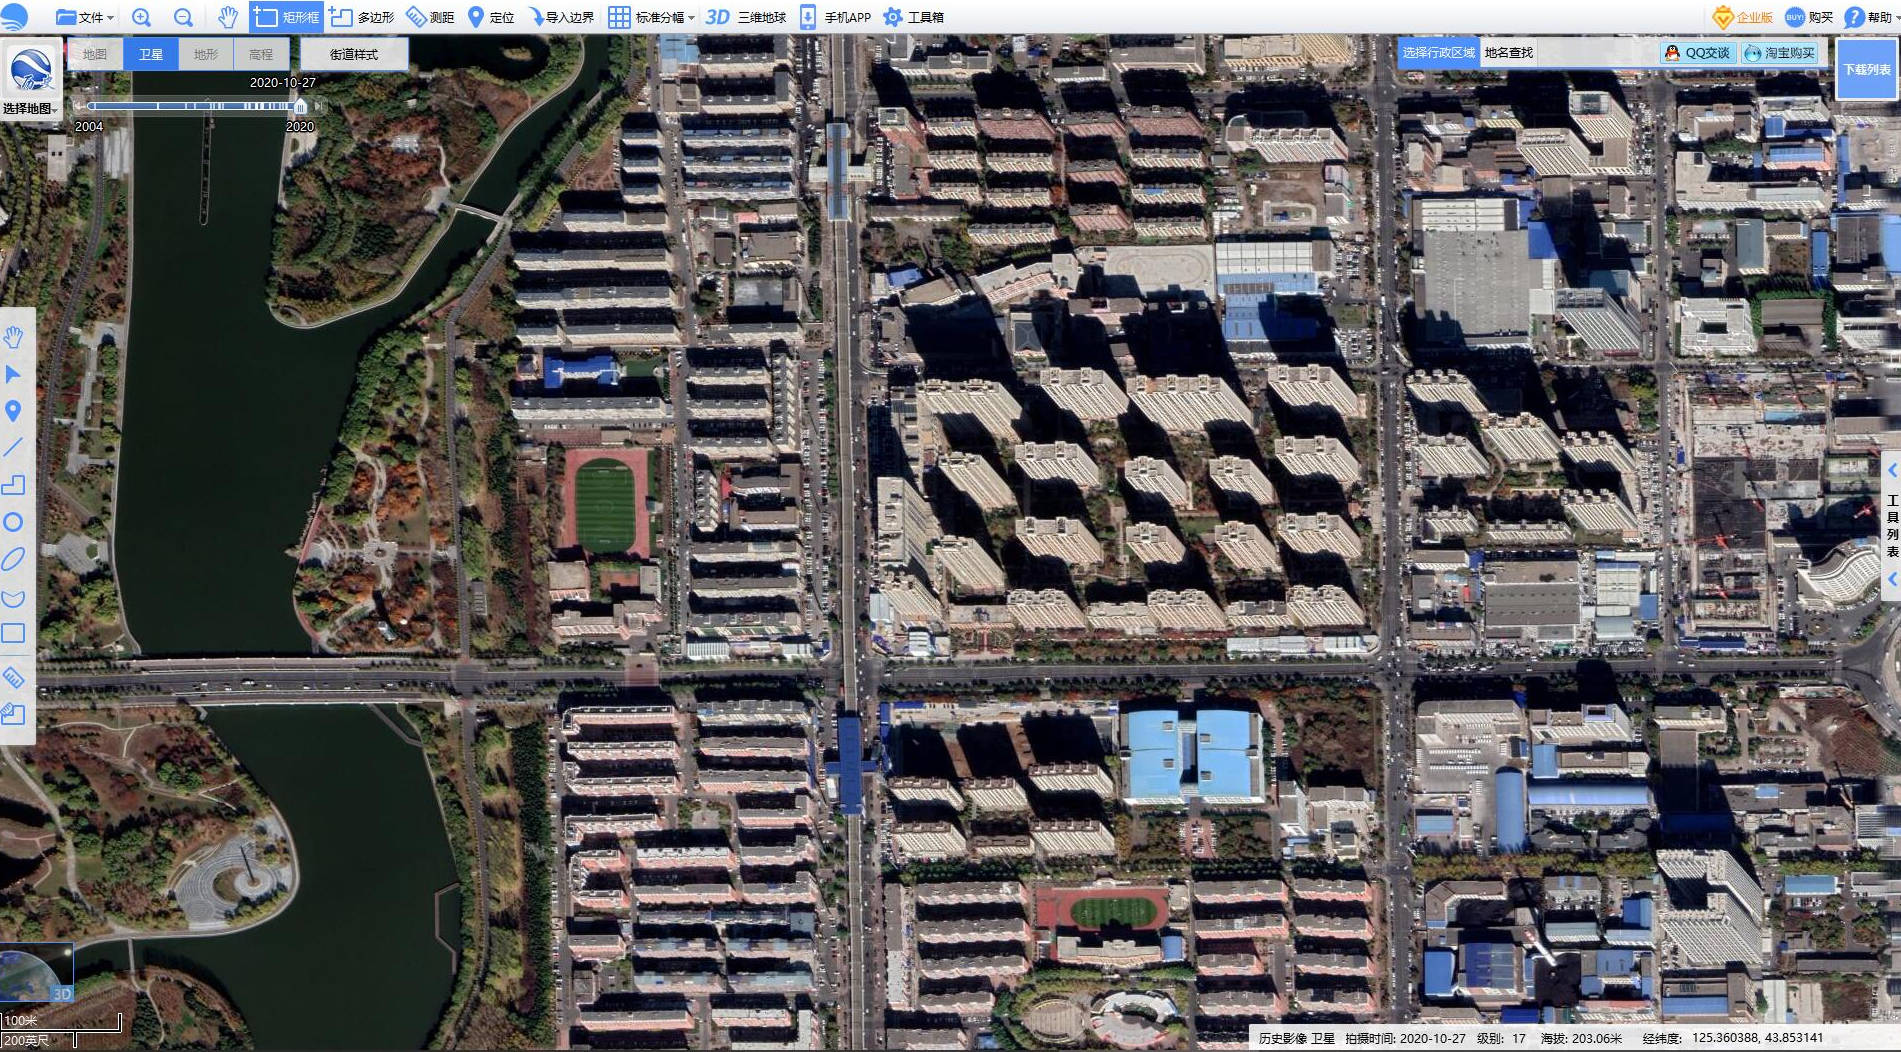 地图)九,四川成都以下为2000年和2020年成都的卫星影像,我们定位的是